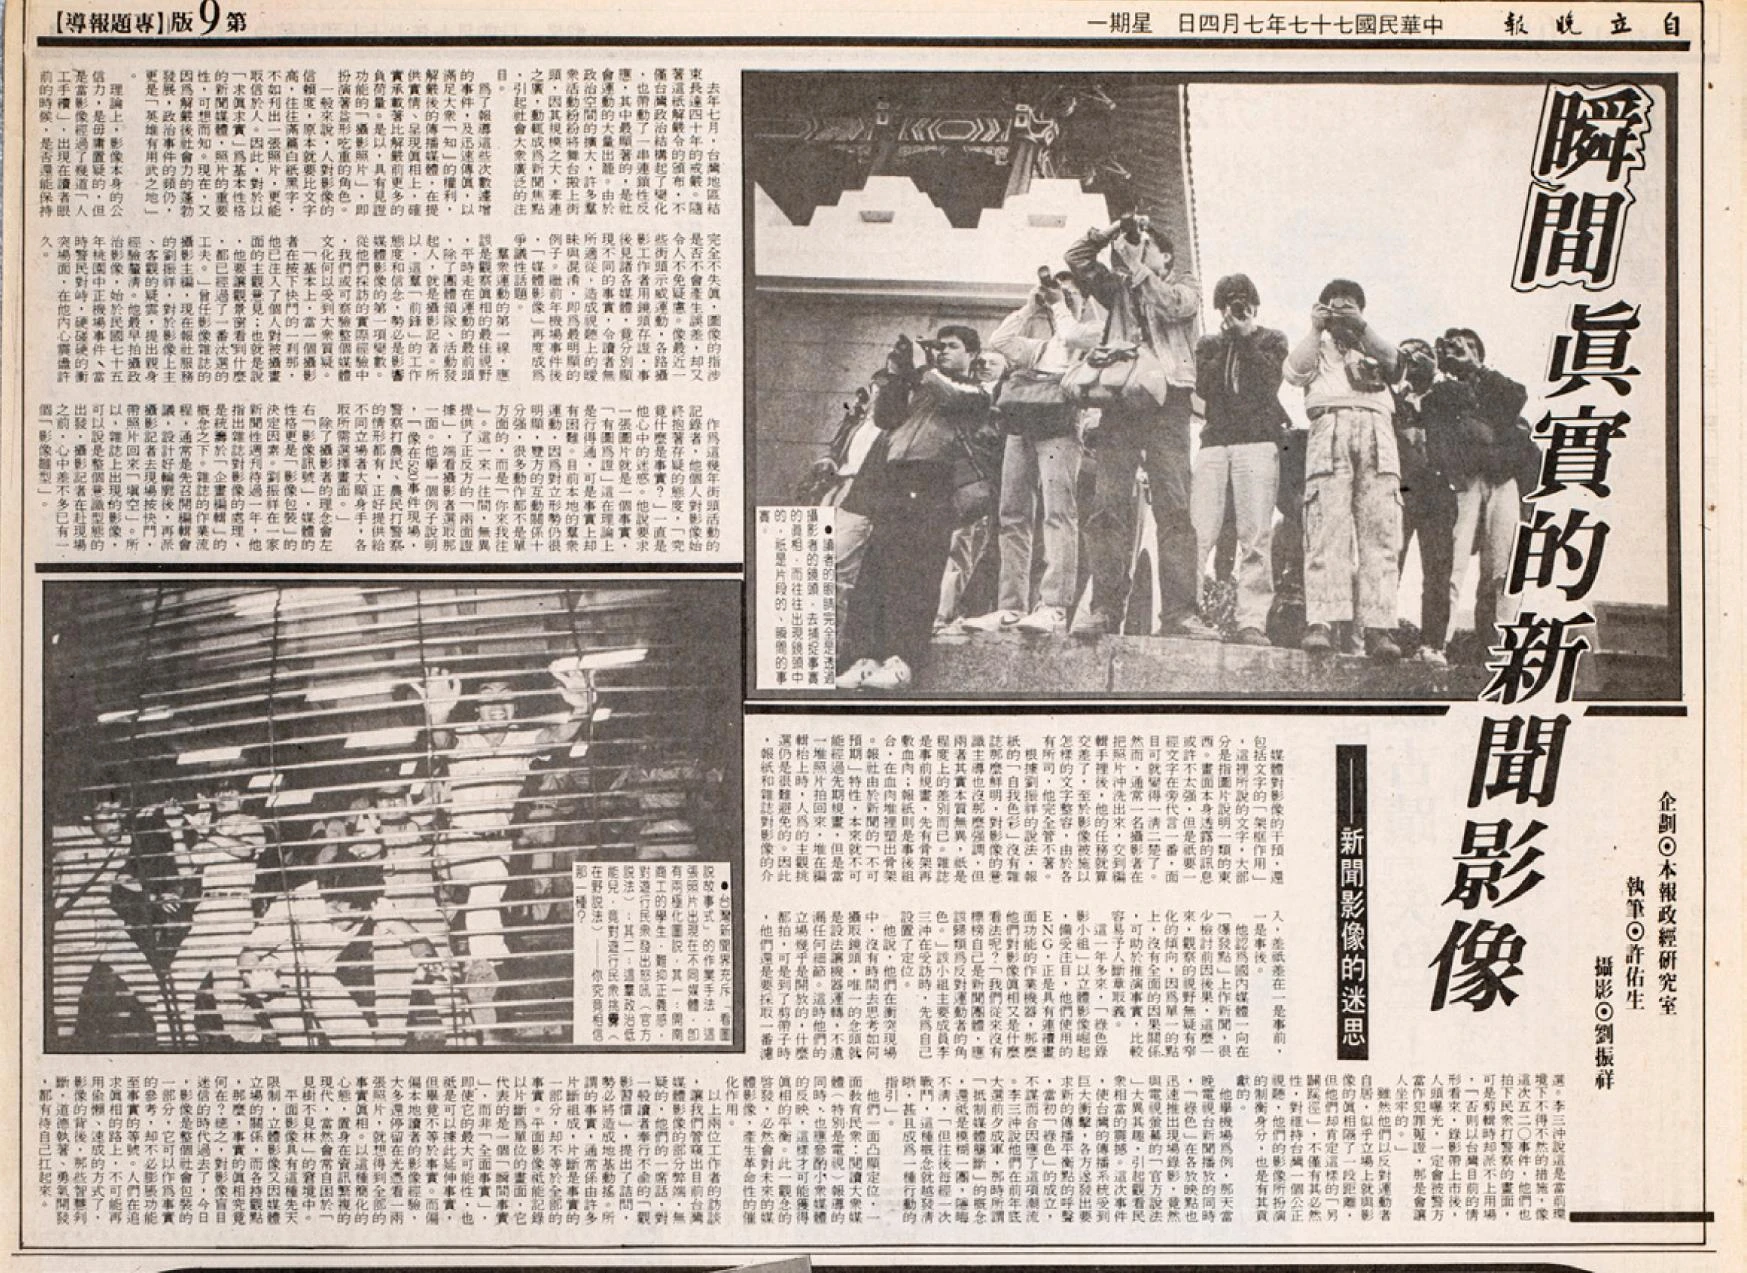 1988 年 7 月 4 日許佑生撰寫〈新聞影像的迷思〉一文，搭配劉振祥所拍攝的一群記者擠在一起搶拍照的畫面，文中反思也批判了影像會說謊及其容易被不同觀點所詮釋的特質。-圖片